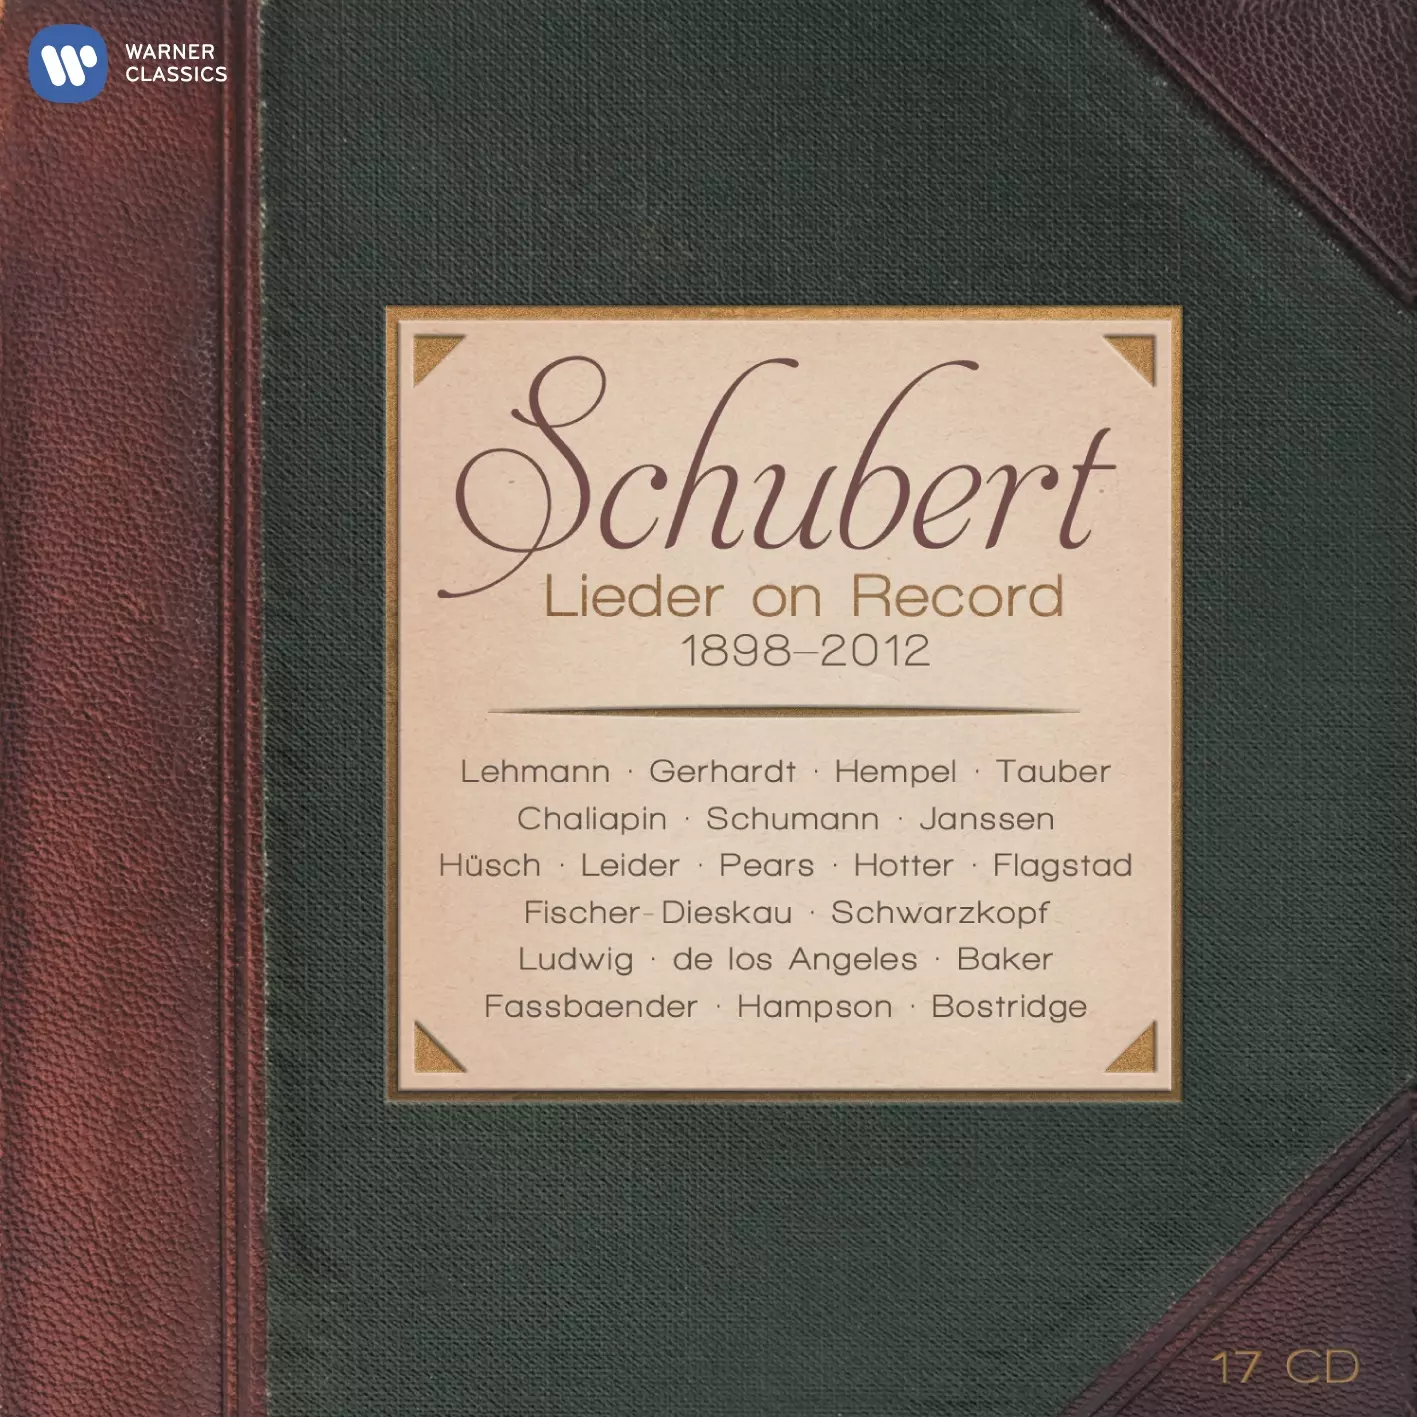 Schubert - Lieder on Record (1898-2012)